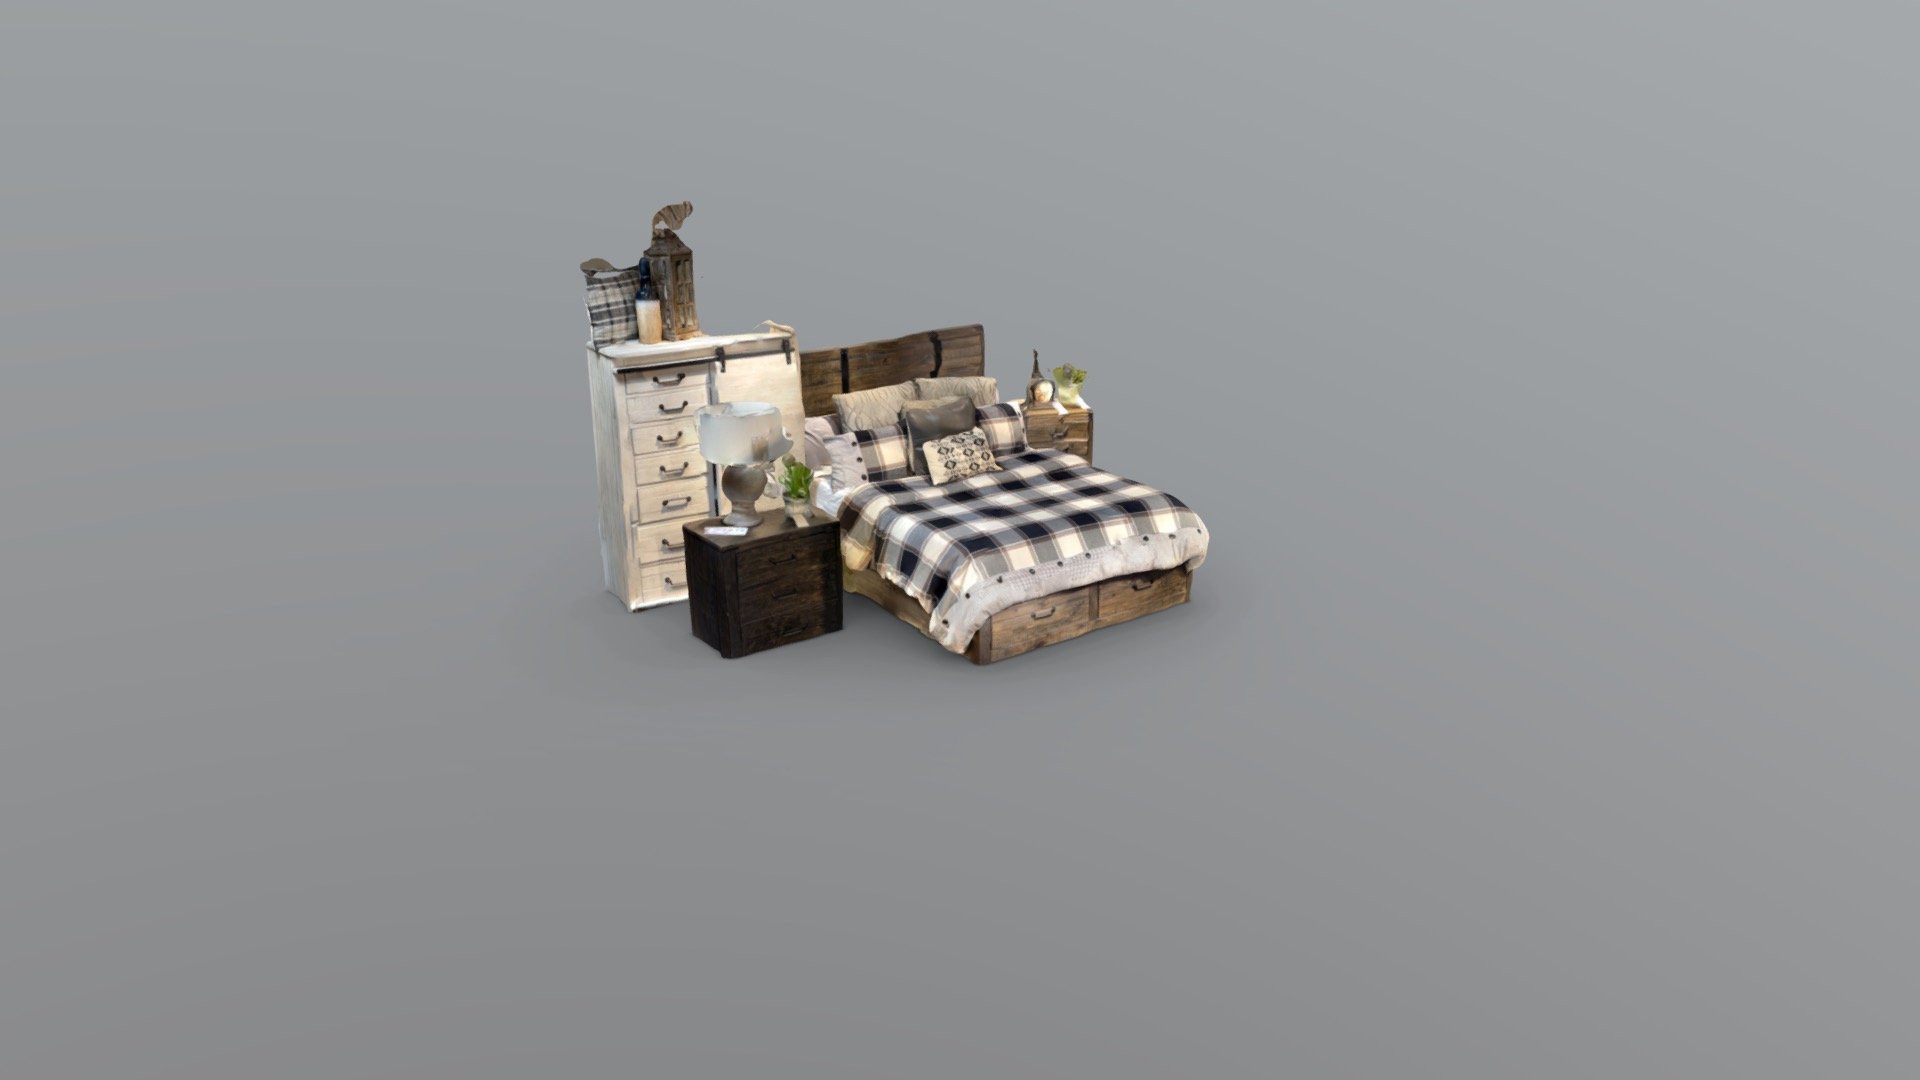 Modern bedroom set